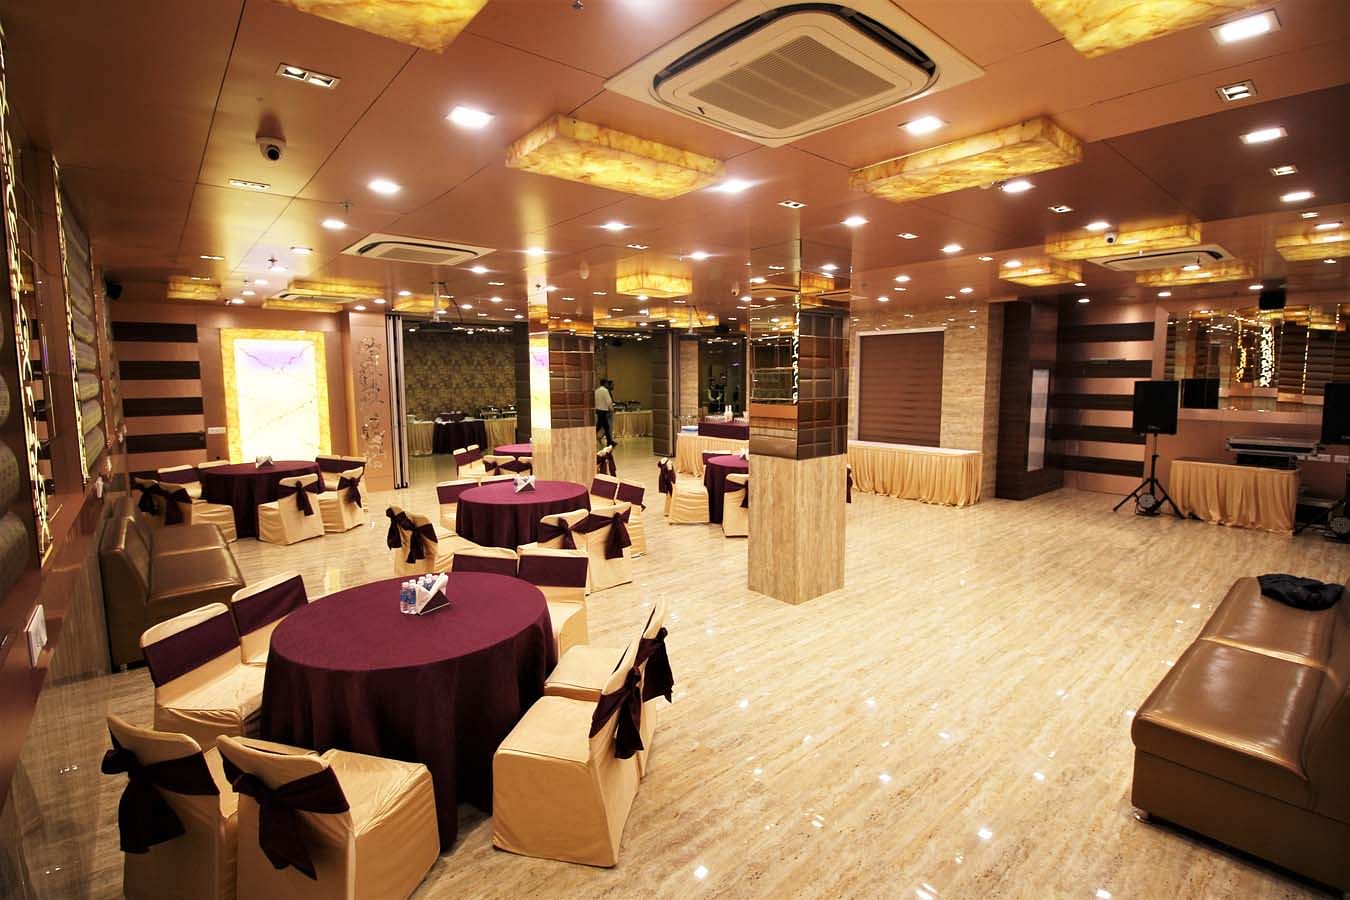 Hotel Golden Grand in Patel Nagar, Delhi